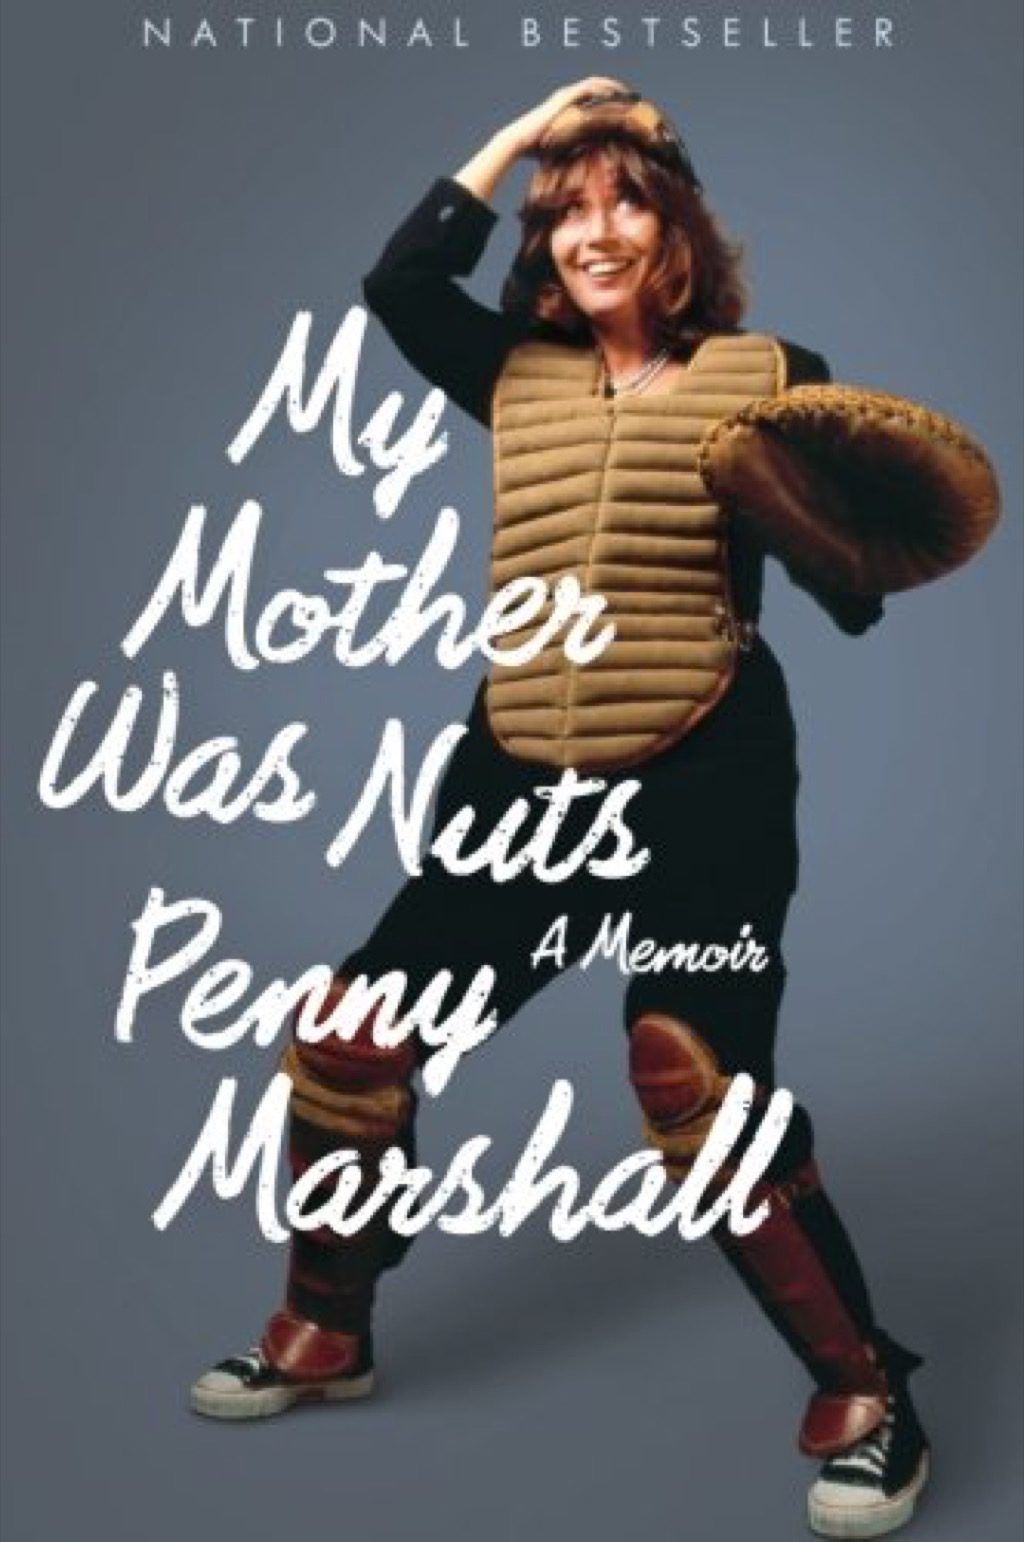 penny marshall hài hước nhất Sách về người nổi tiếng